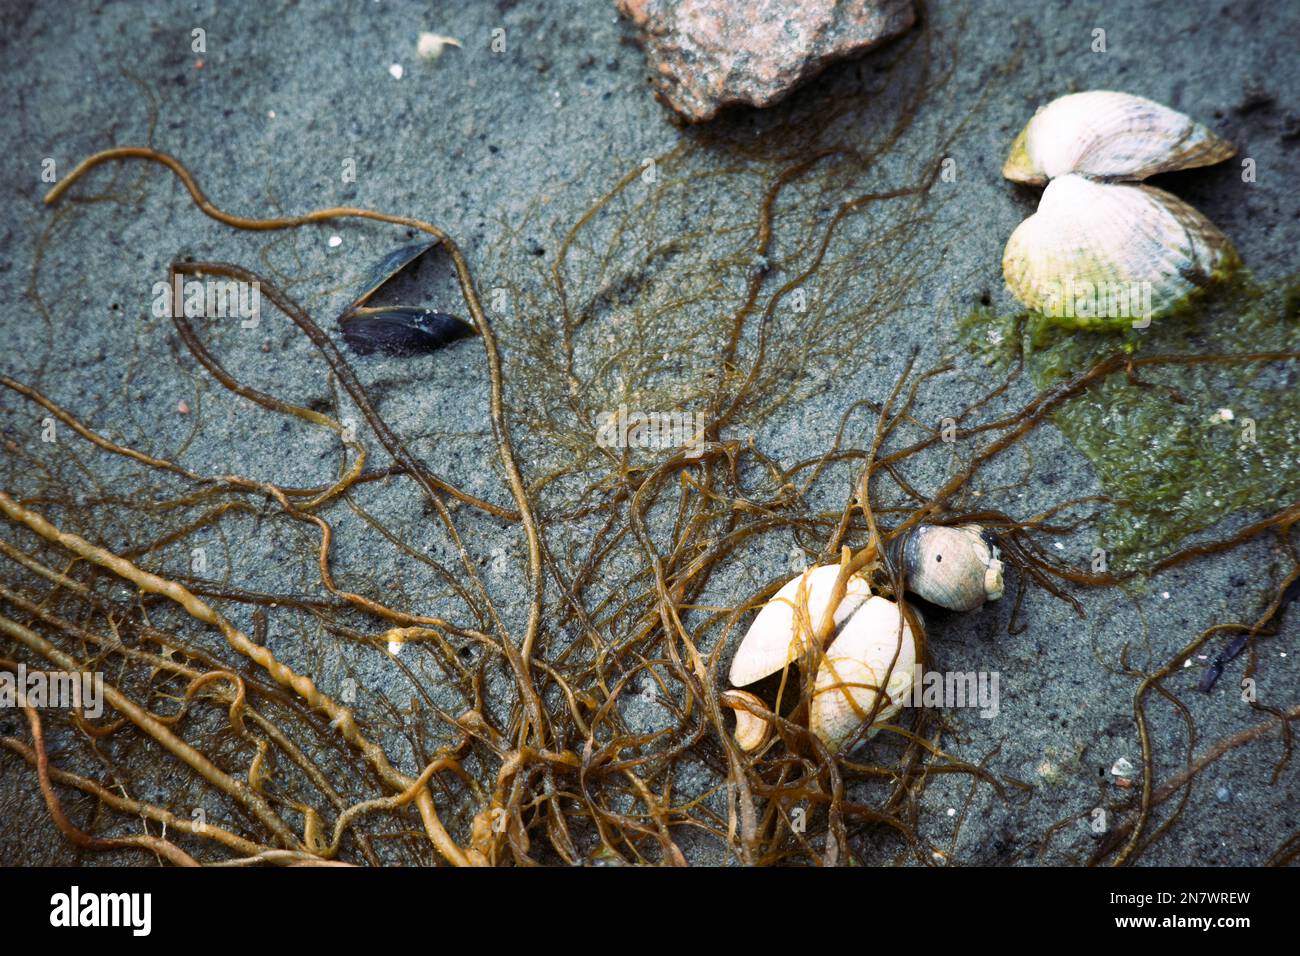 La vie en mer, comme les moules, les varech et les barnacles, trouvée sur le bord de mer après une tempête printanière Banque D'Images